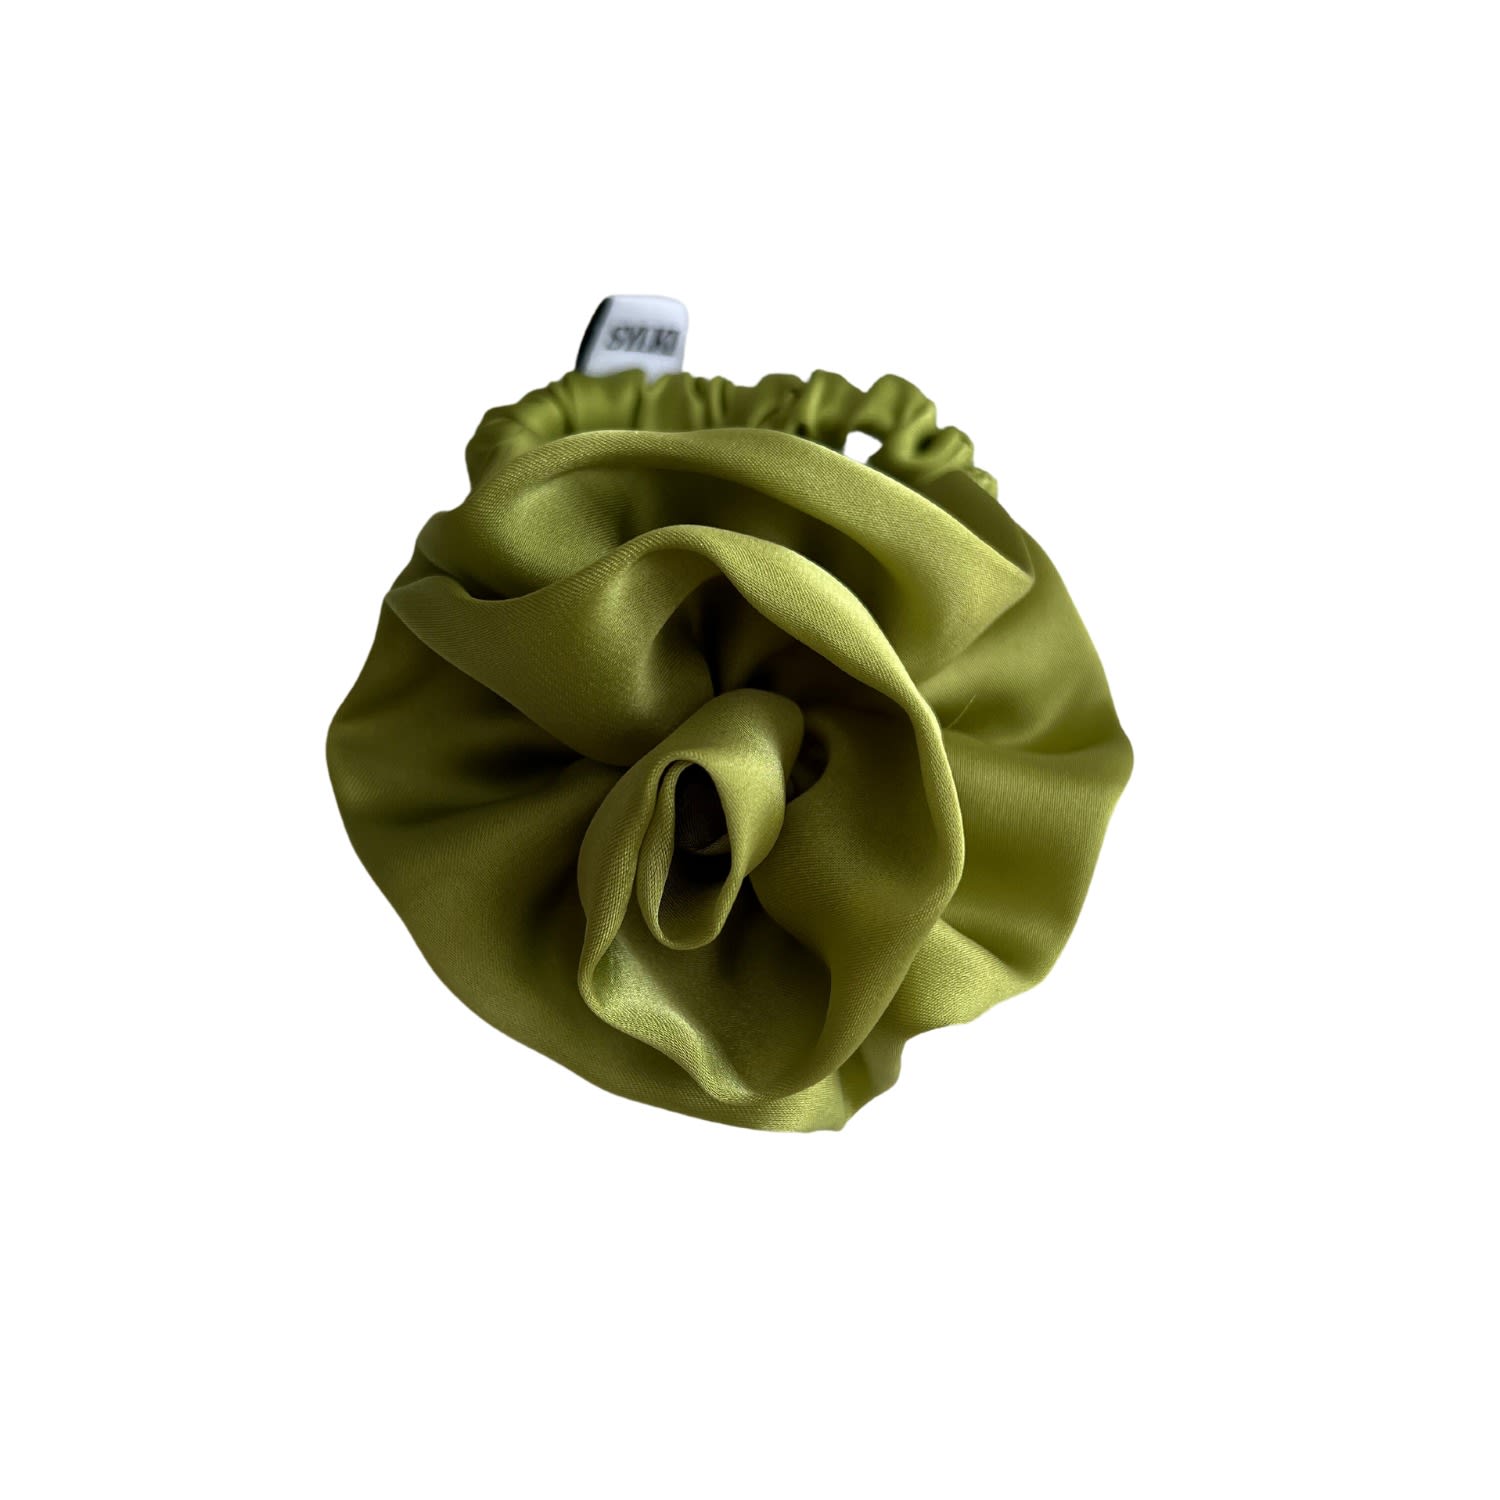 Sylki Women's Flower Applique Hair Tie - Green